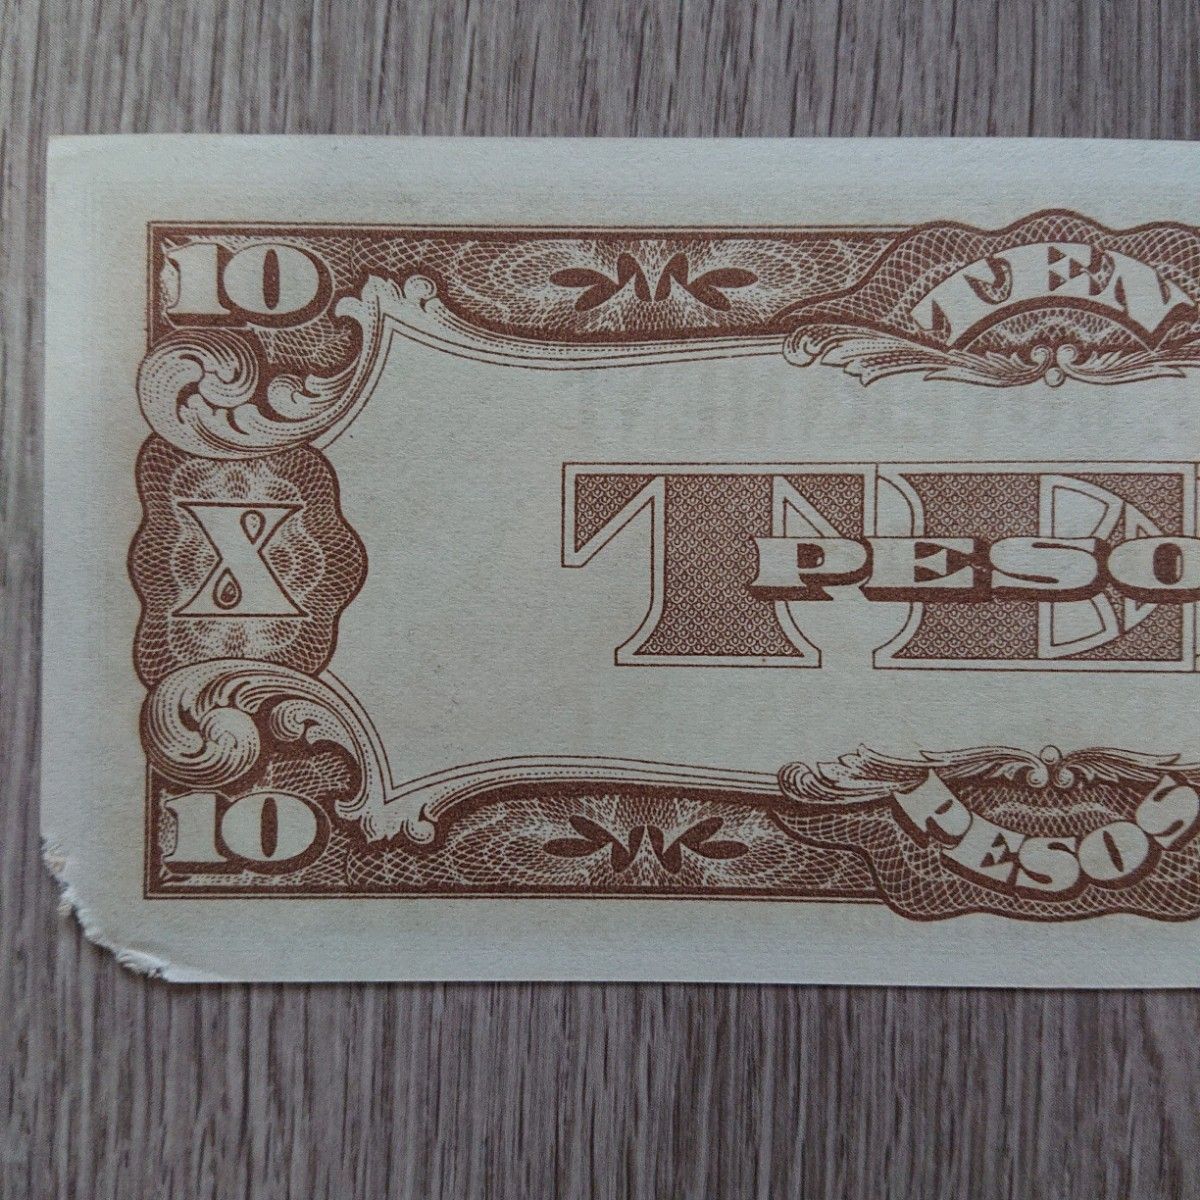 軍票 旧紙幣 古銭 古札 大日本帝国政府 10ペソ 大東亜戦争軍用手票フィリピン方面ほ号10ペソ